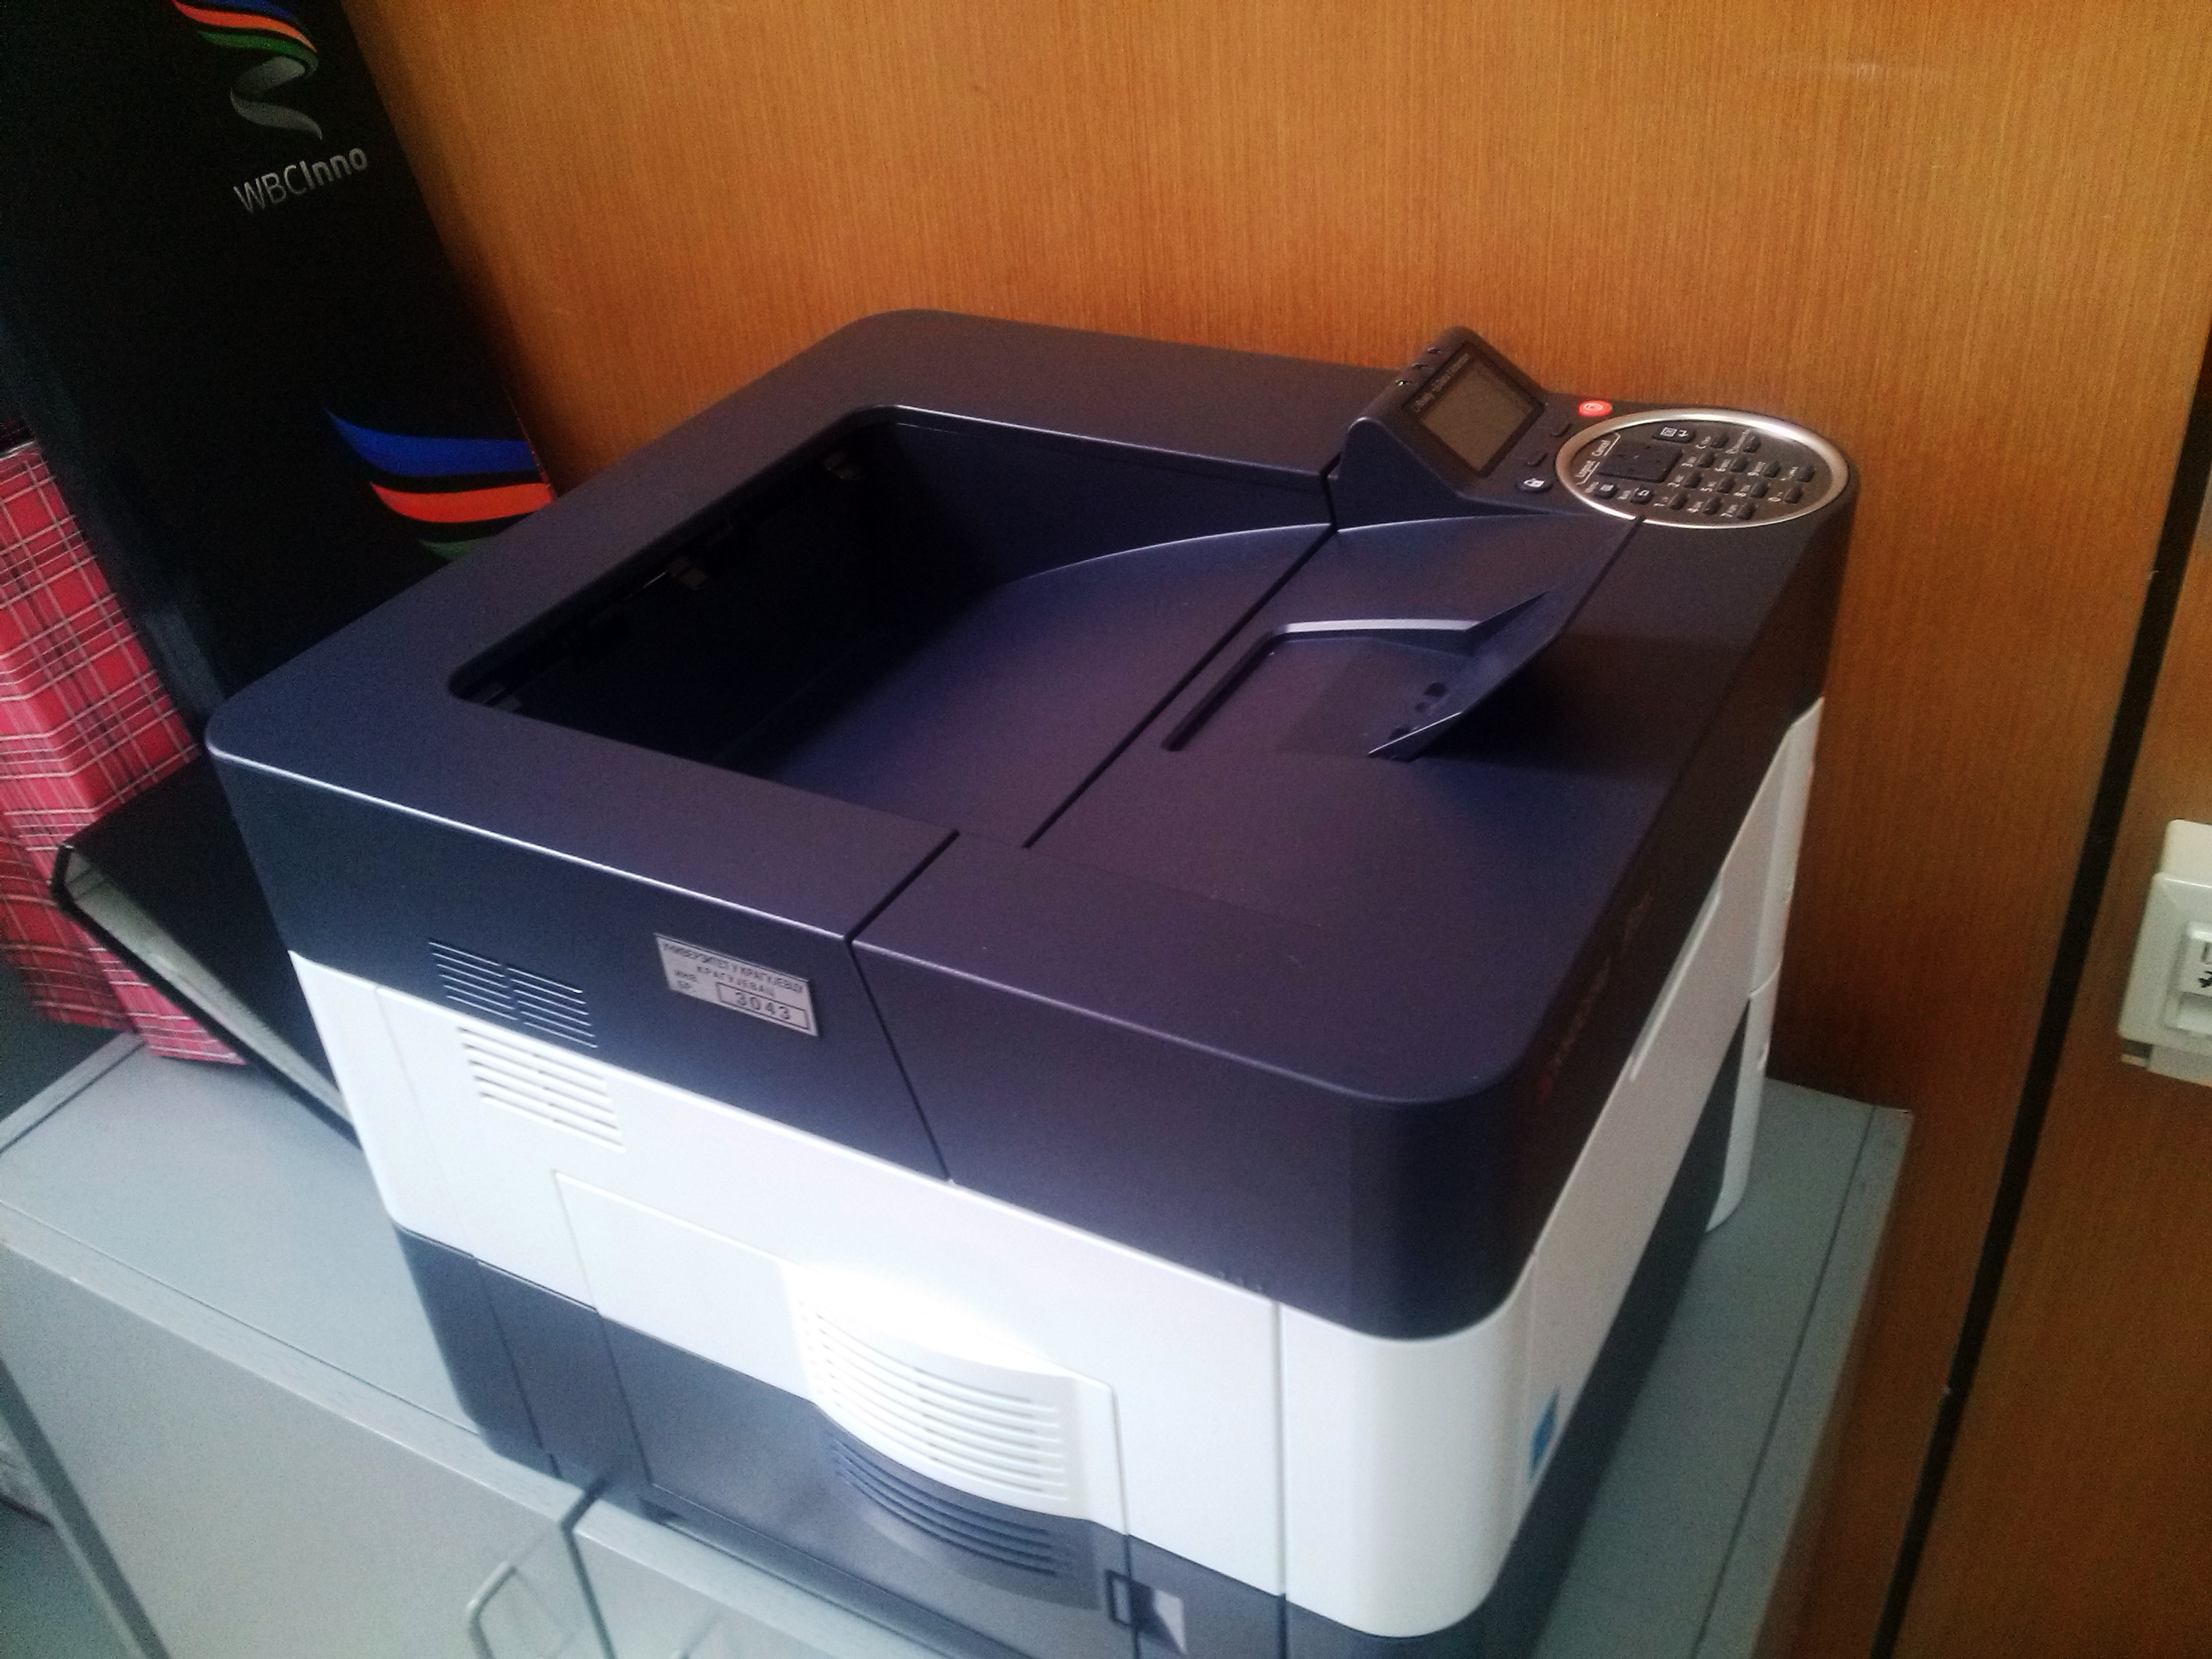 Laser printer - Kyocera FS-4200DN